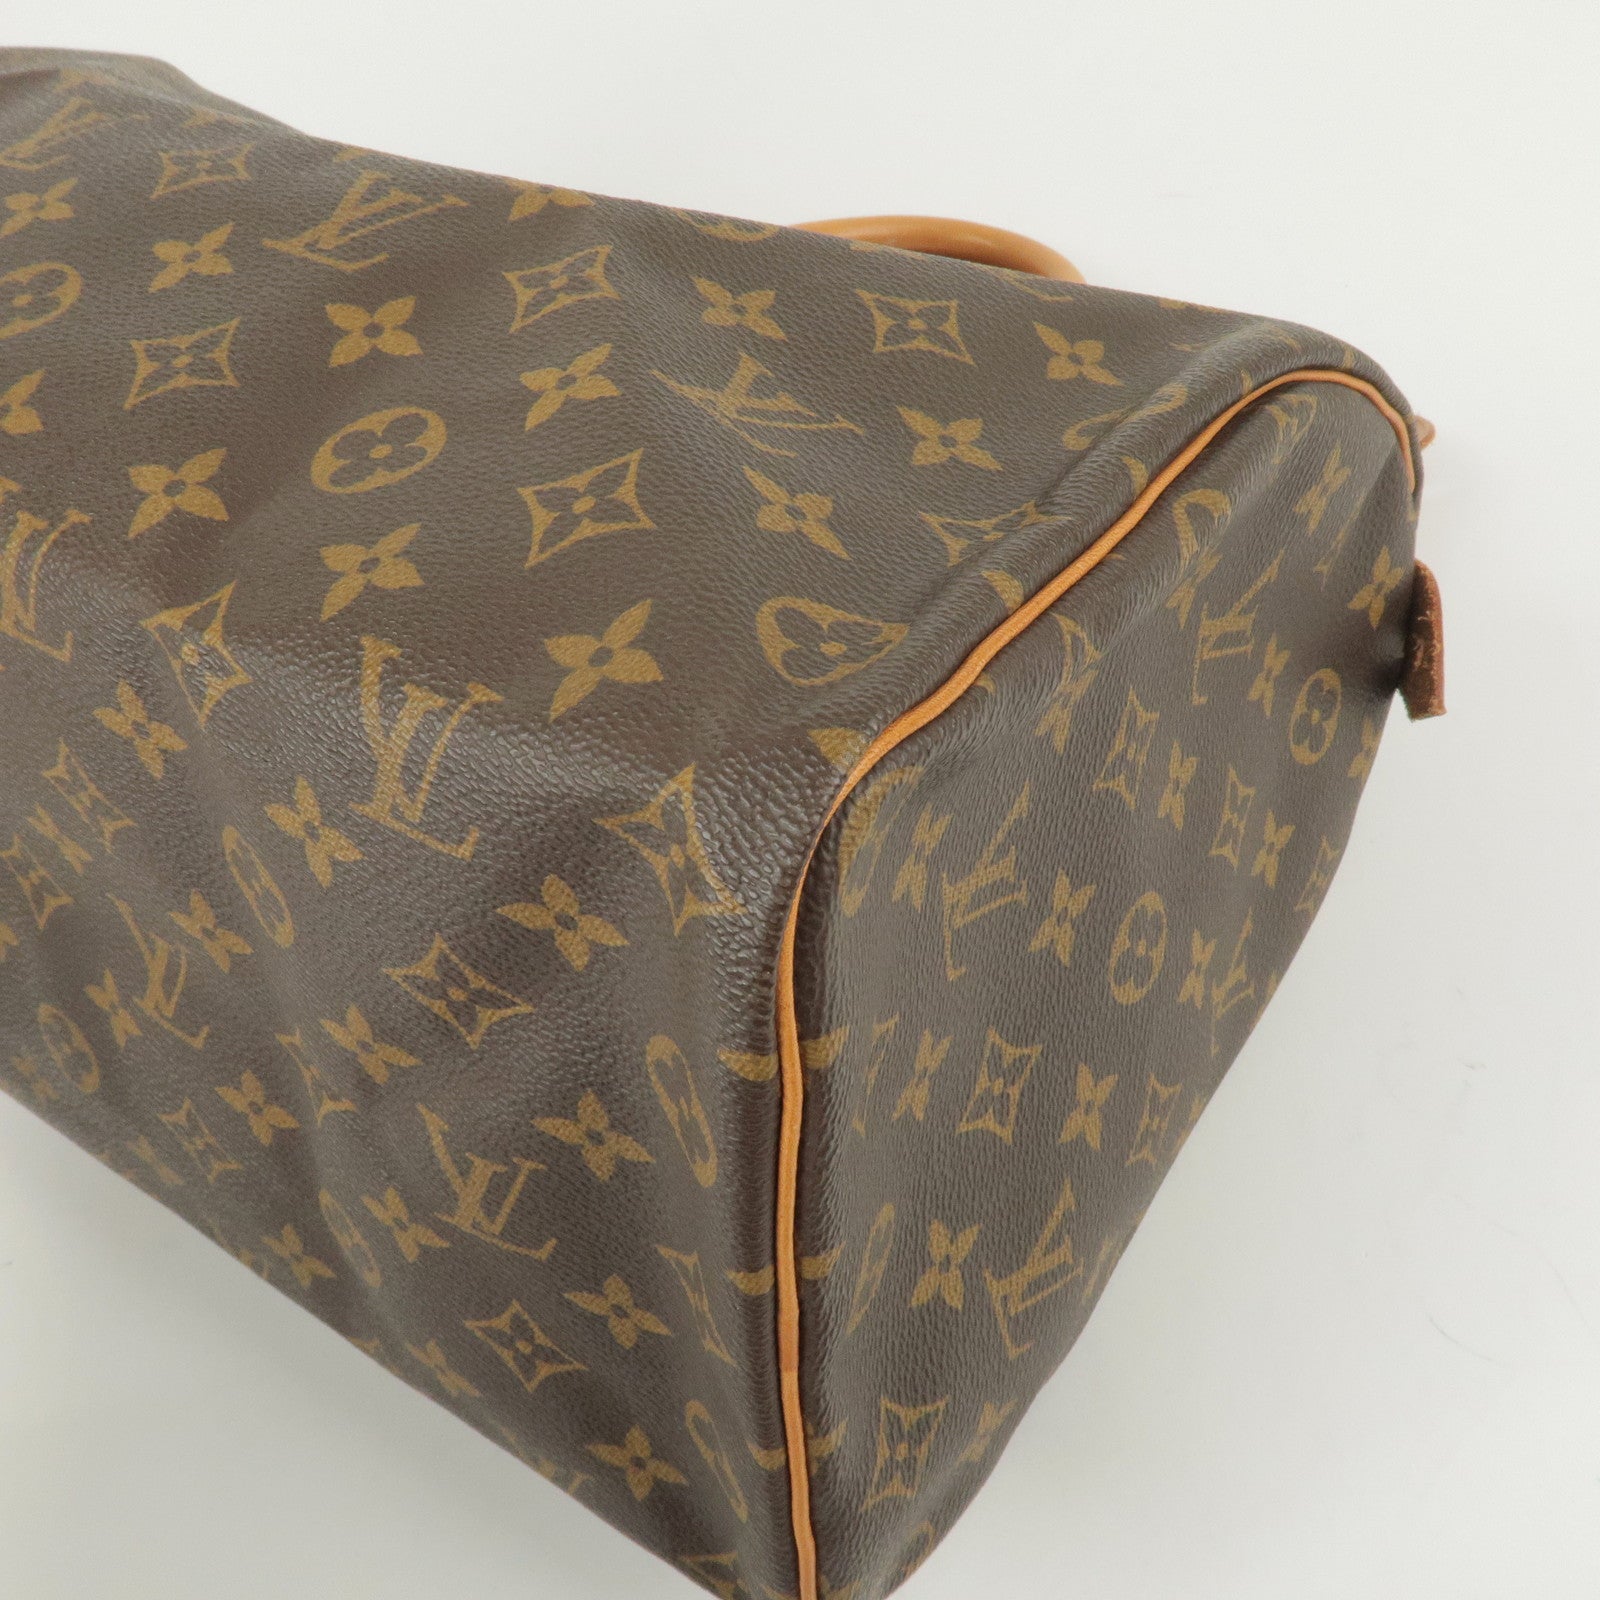 Louis Vuitton Monogram Speedy 30 Bag 1997 Vintage Handbag LV